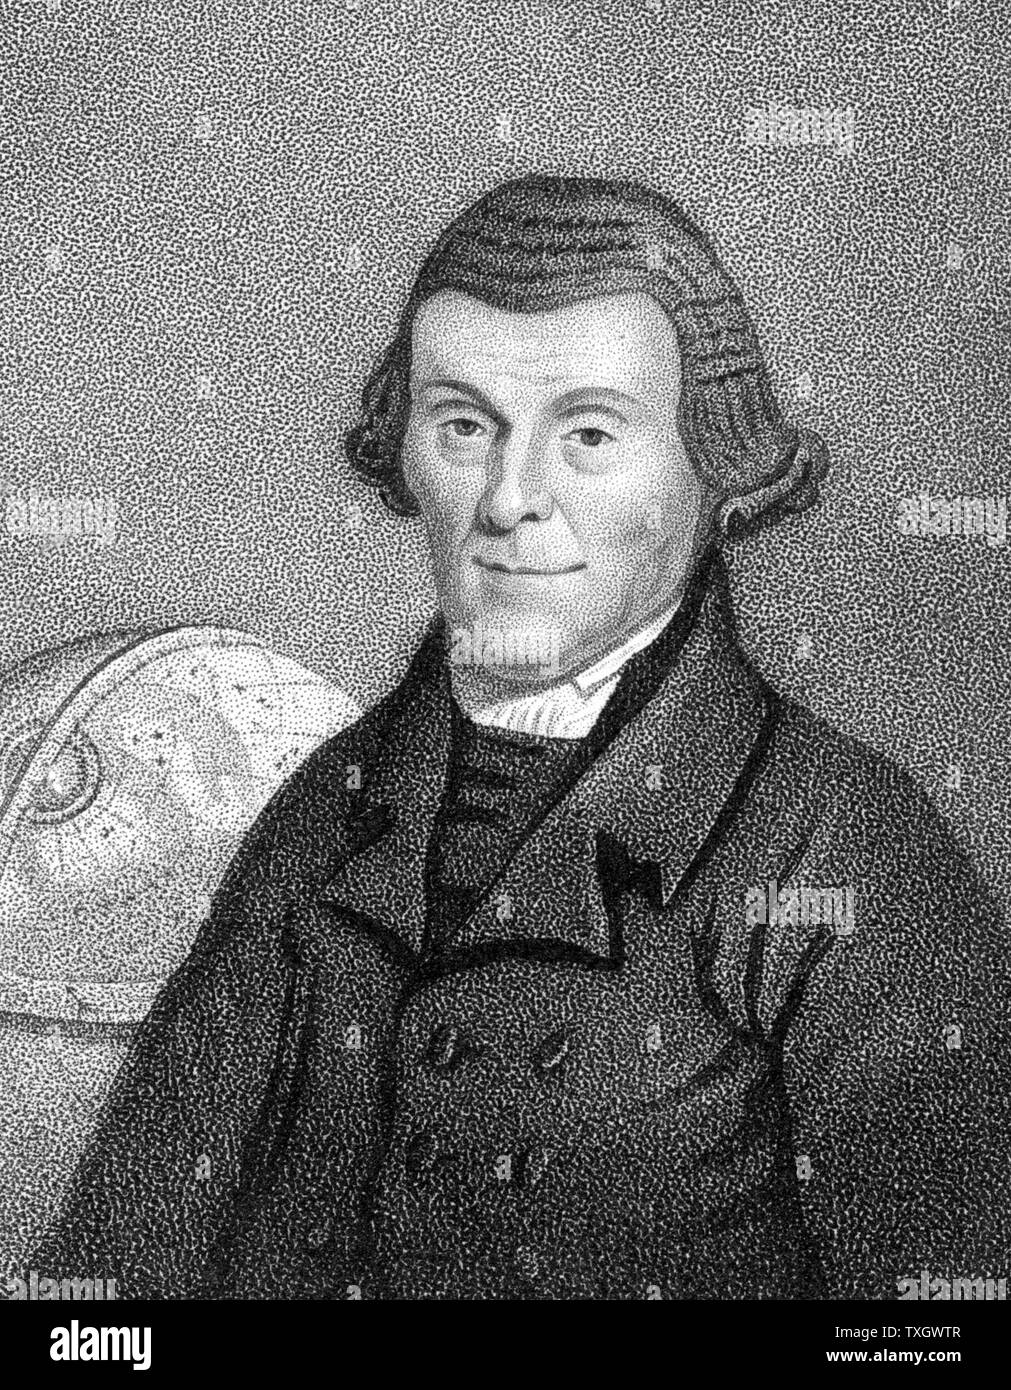 Henry Andrews (1744-1820) Englisch astronomische Rechner, Schulmeister. Thema der 'Moore Almanack". Geboren in der Nähe von Grantham Frieston Lincolnshire Walze Gravur Stockfoto